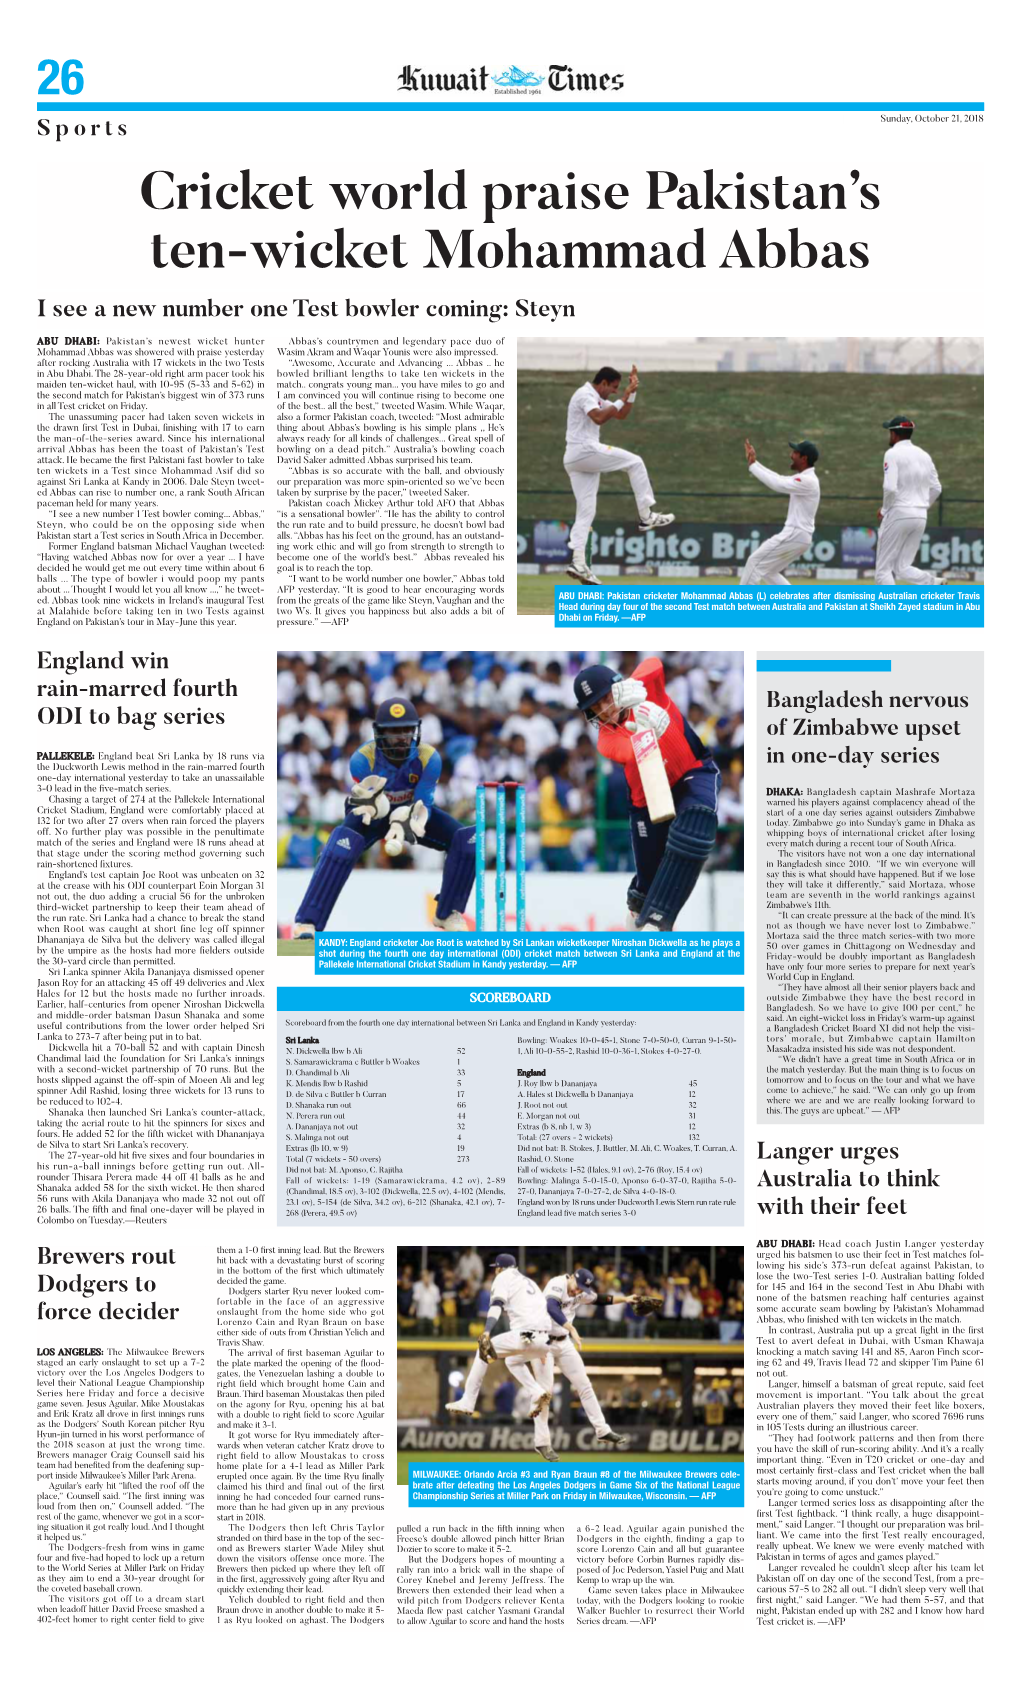 Cricket World Praise Pakistan's Ten-Wicket Mohammad Abbas